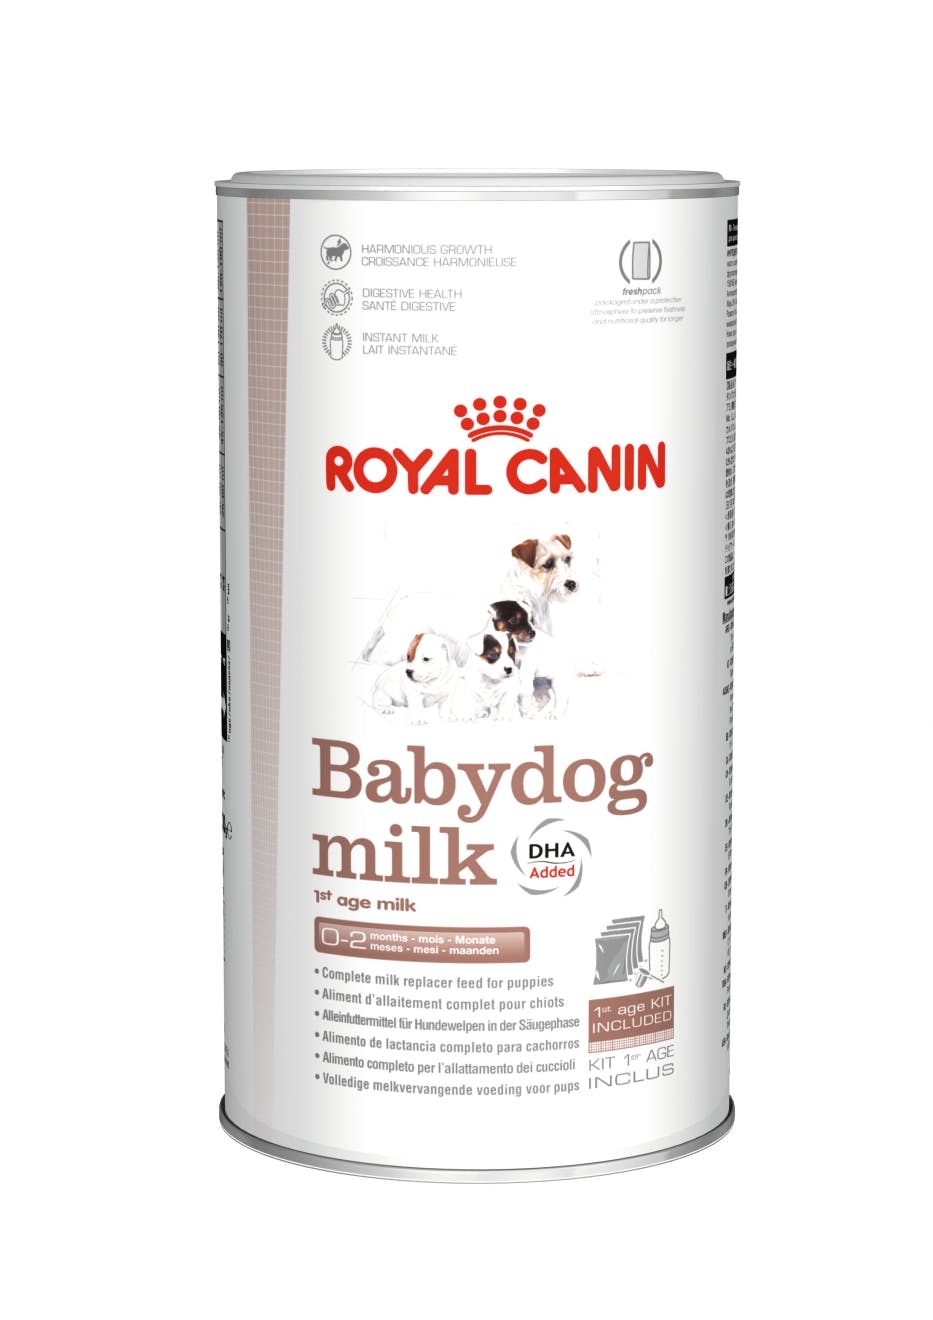 Billede af Royal Canin Babydog Milk Modermælkserstatning/supplement til modermælk til hvalpe. Fra fødsel til fravænning